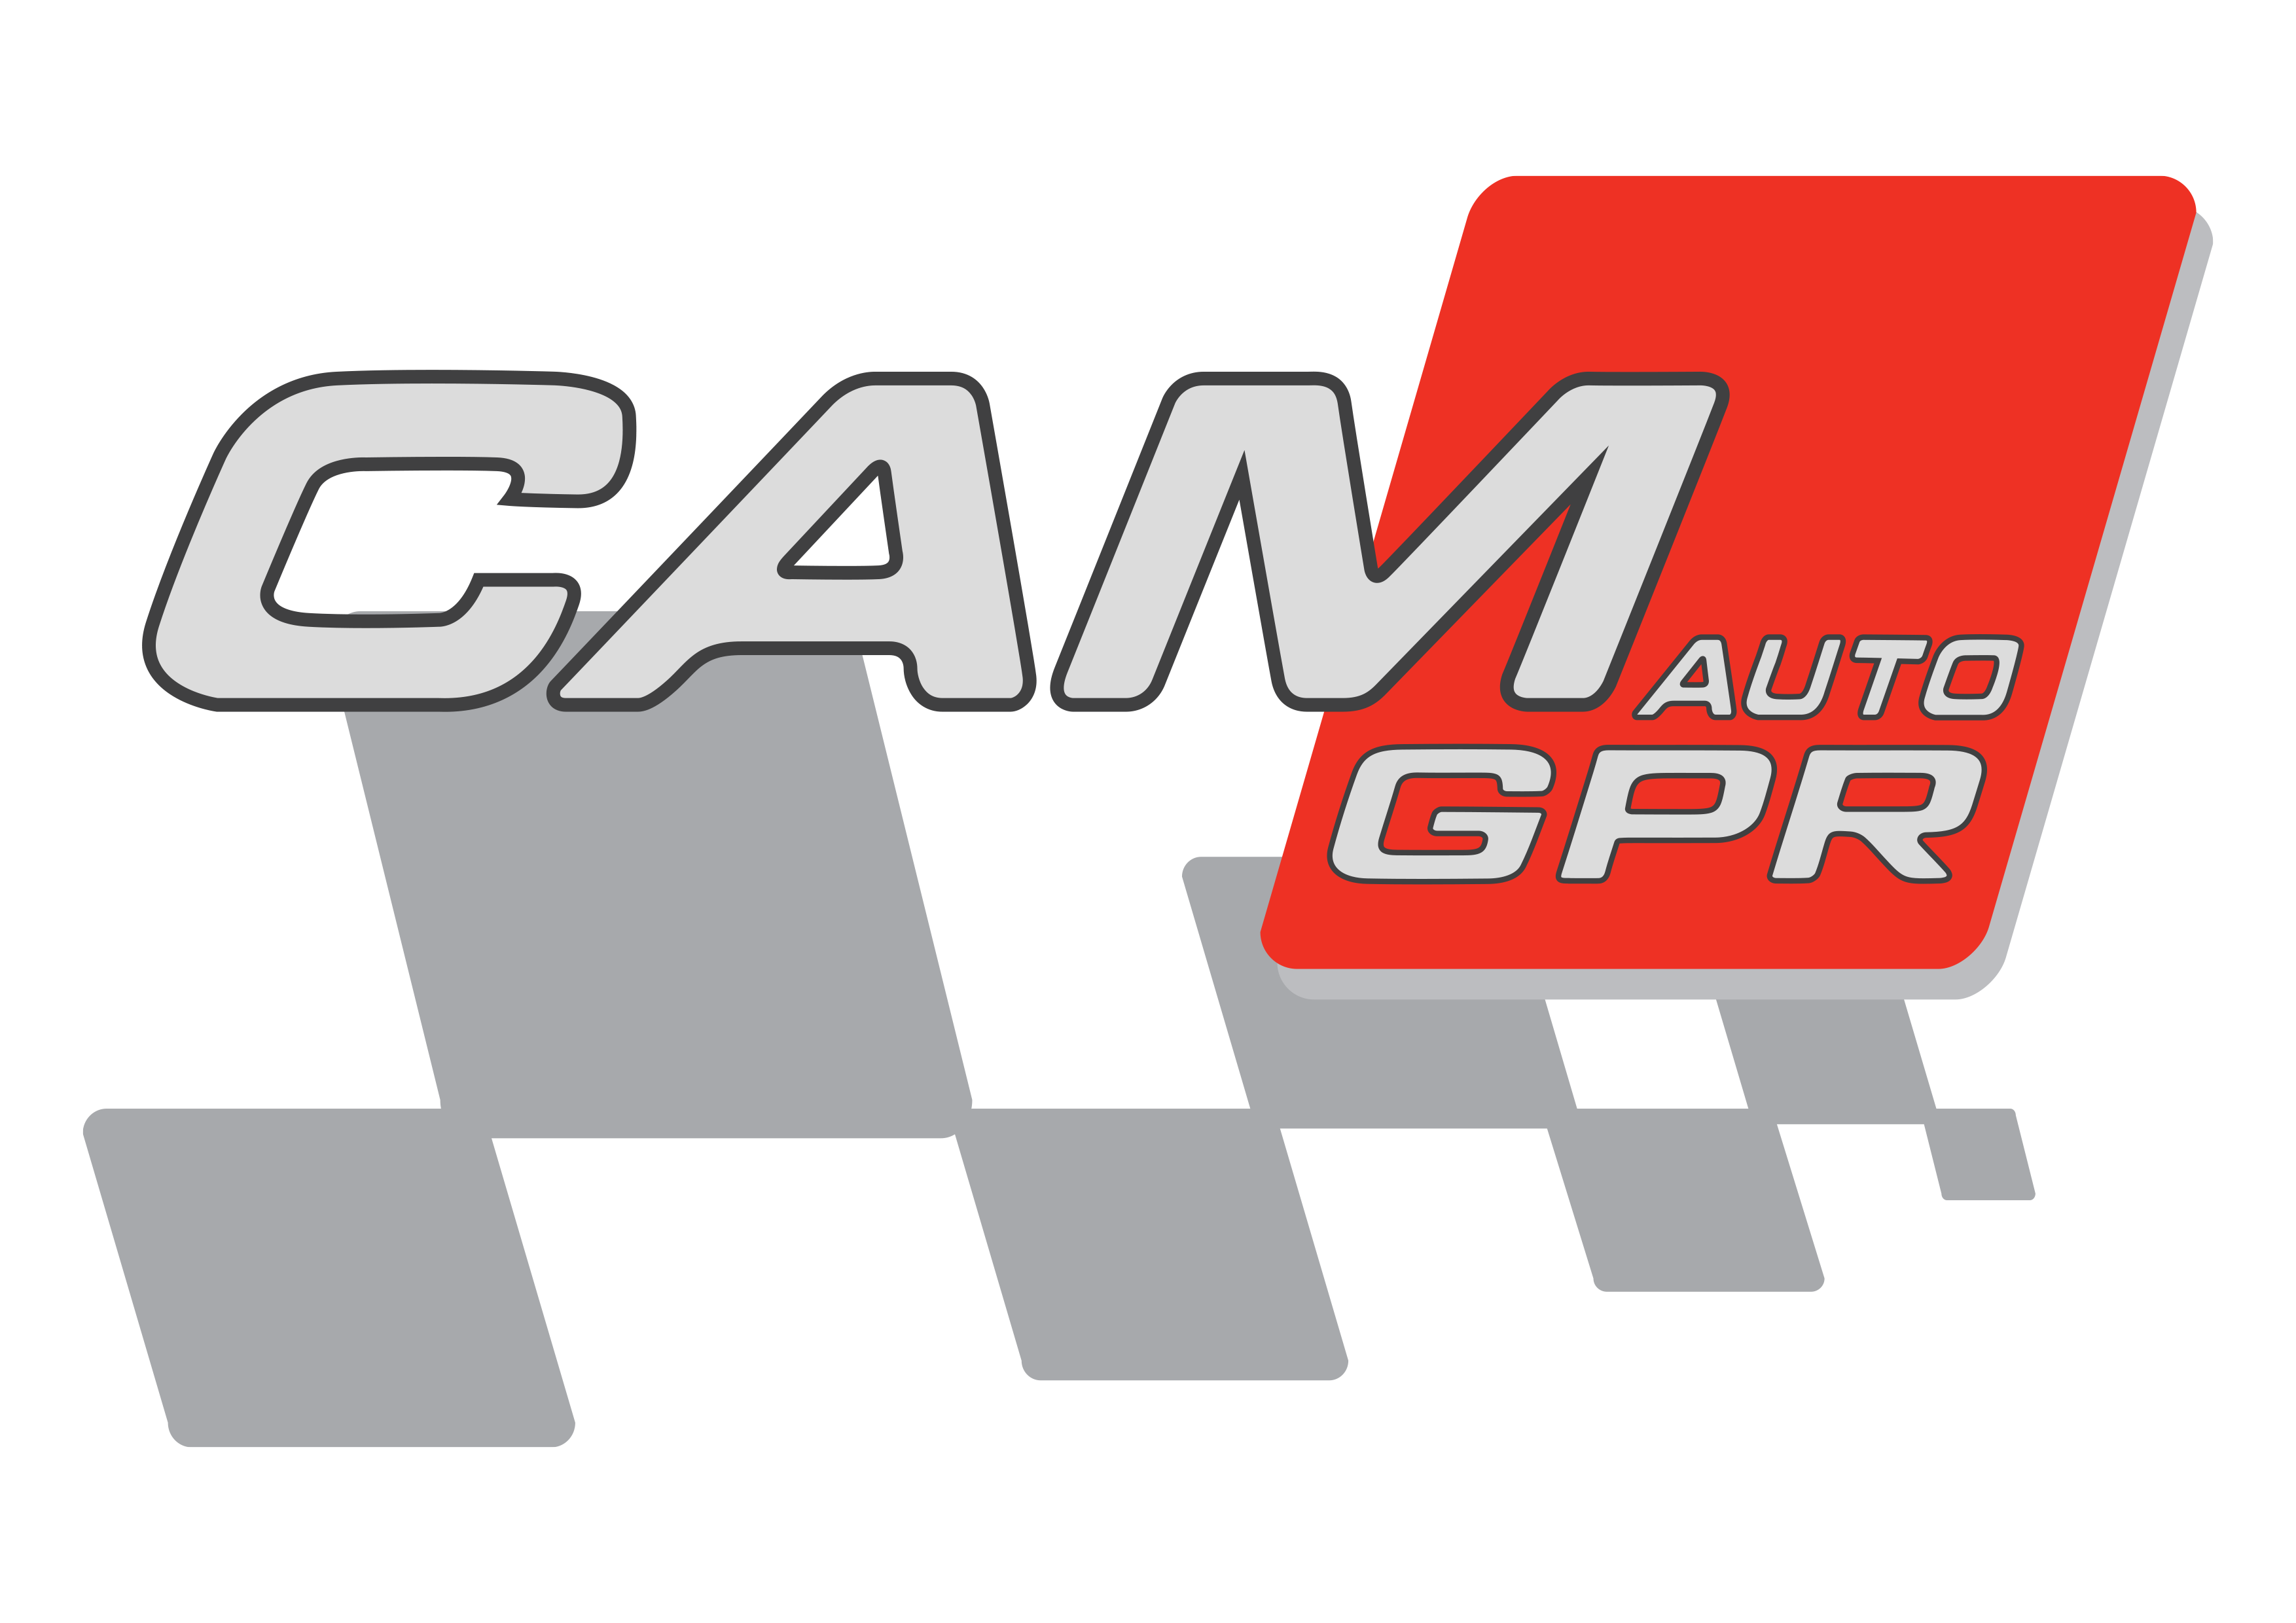 Camauto Logo